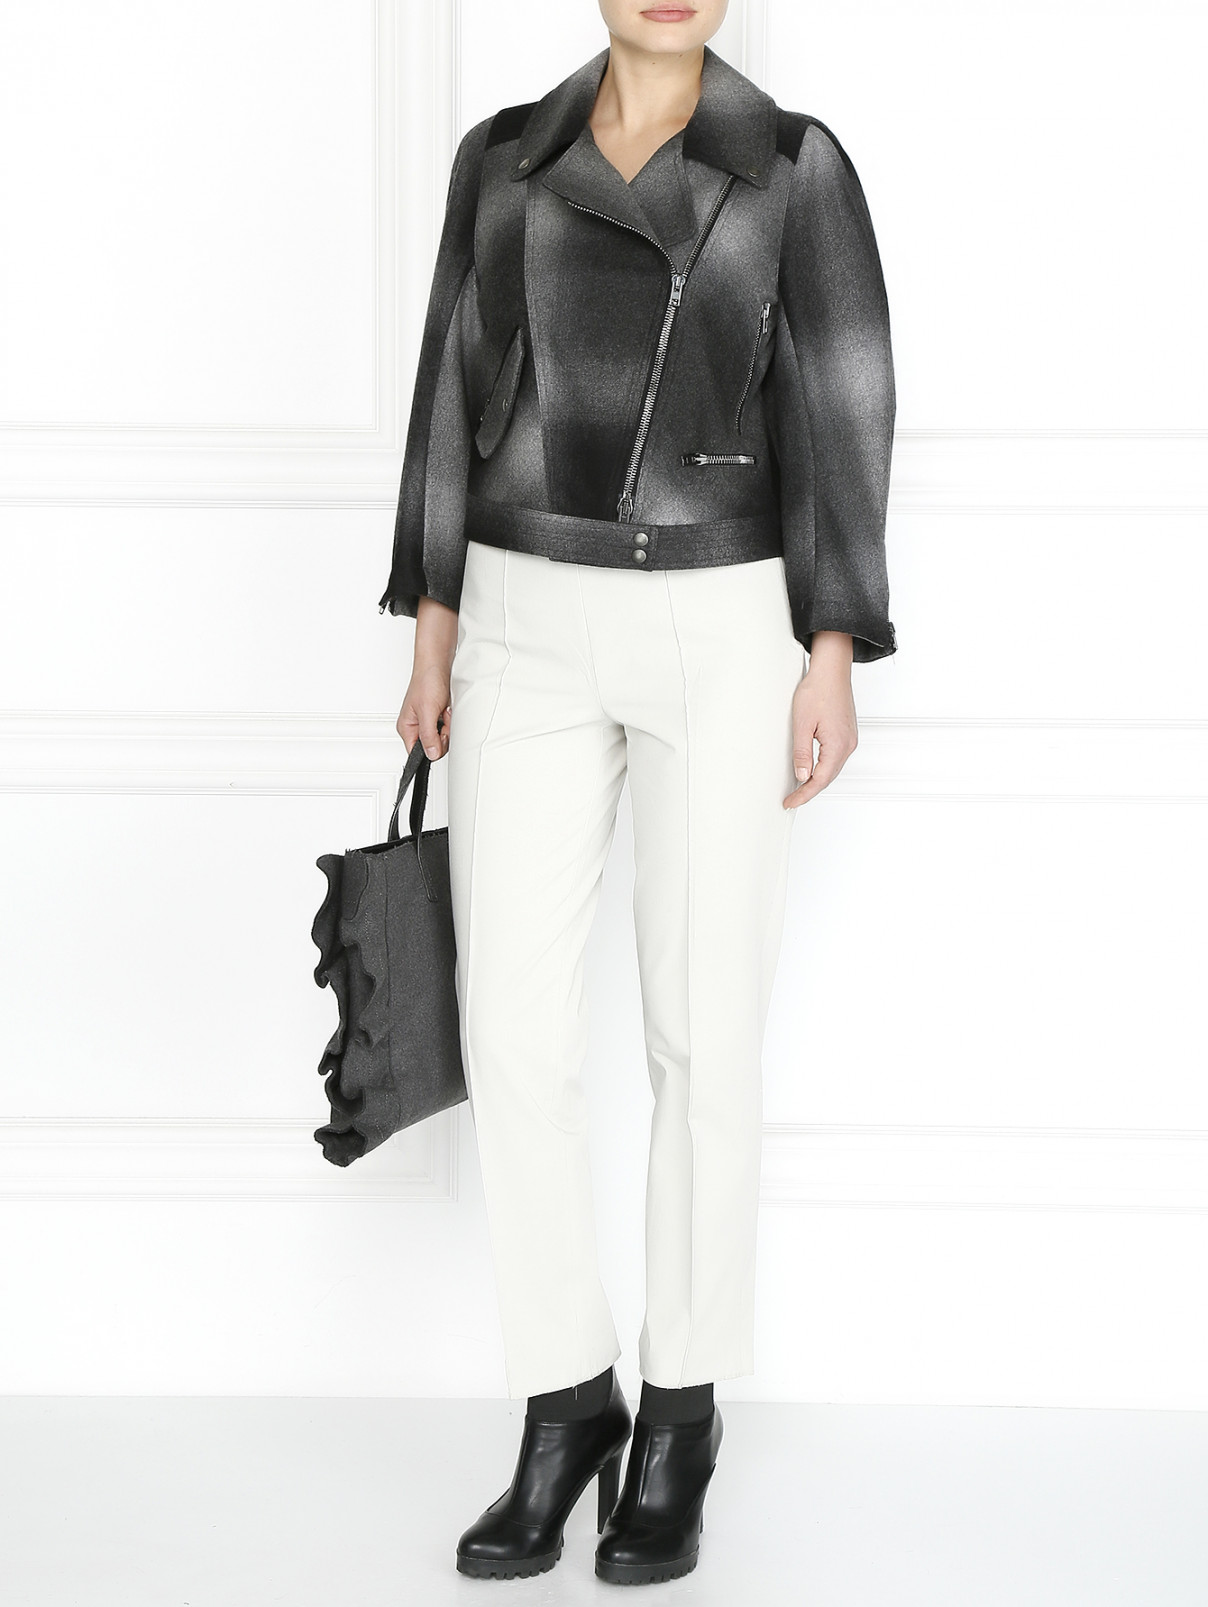 Шерстяная куртка на молнии Antonio Marras  –  Модель Общий вид  – Цвет:  Серый